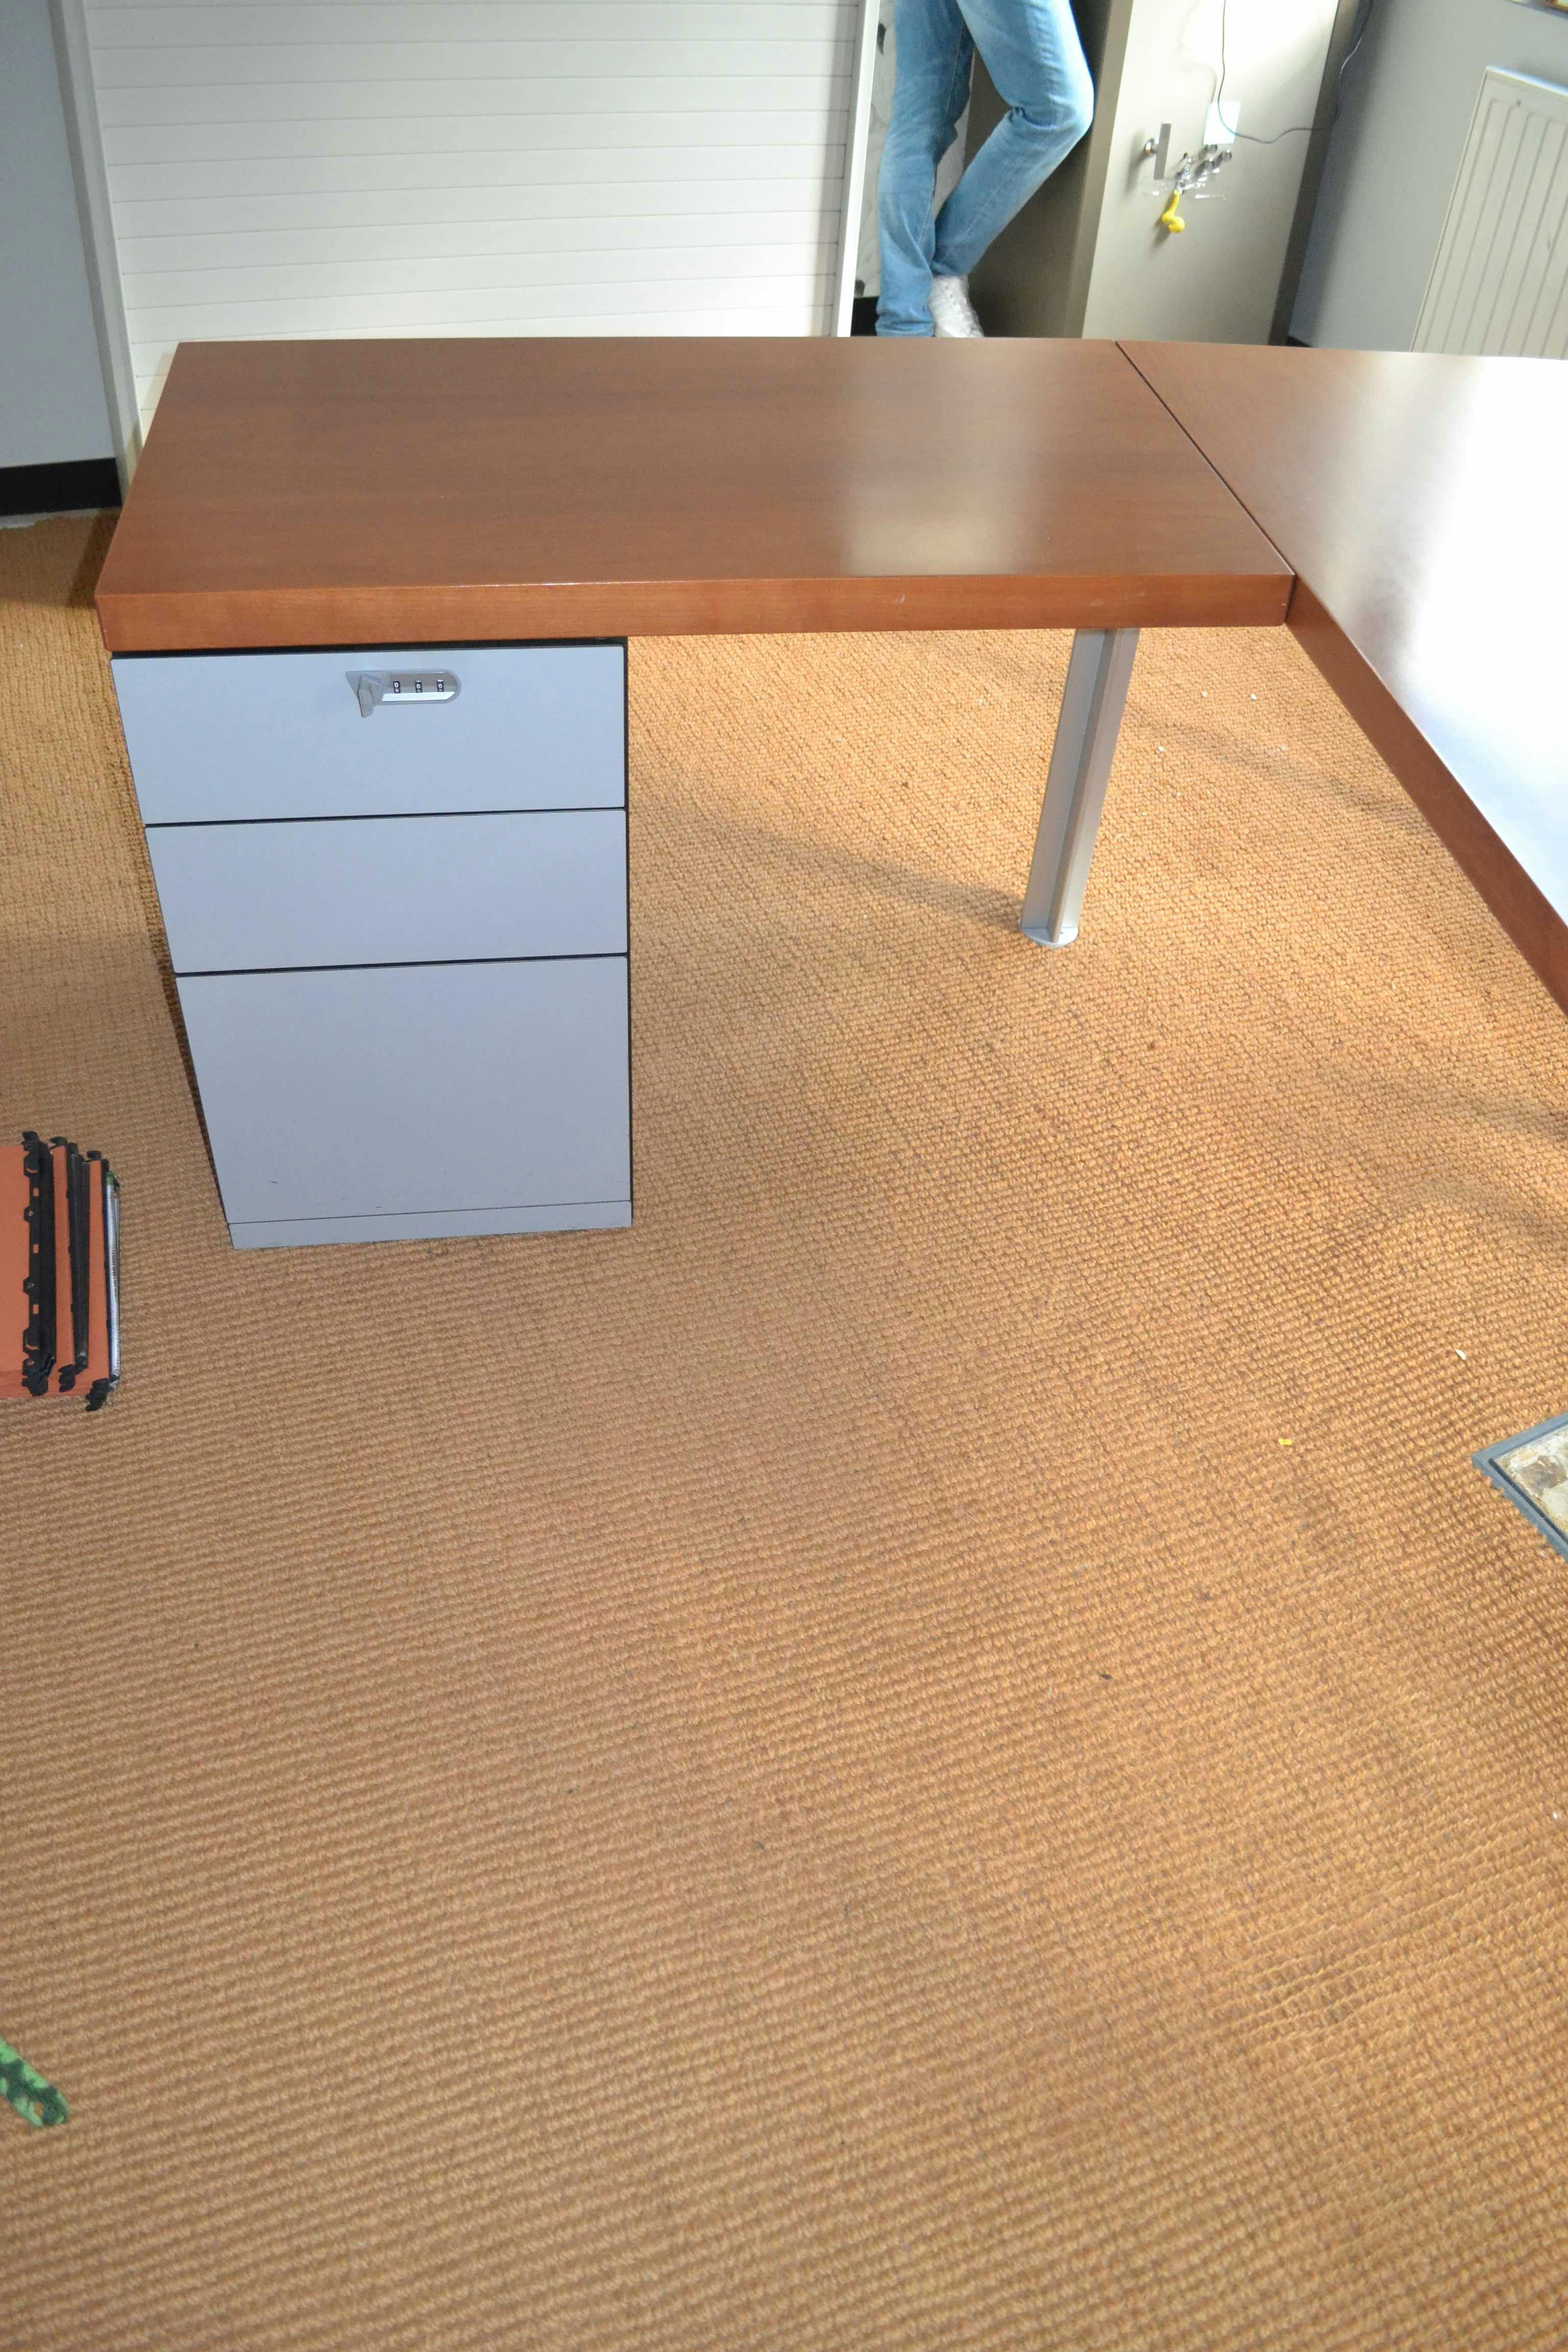 Bureau en L avec lampe / Bureau L Vorm met lamp - Second hand quality "Desks" - Relieve Furniture - 3